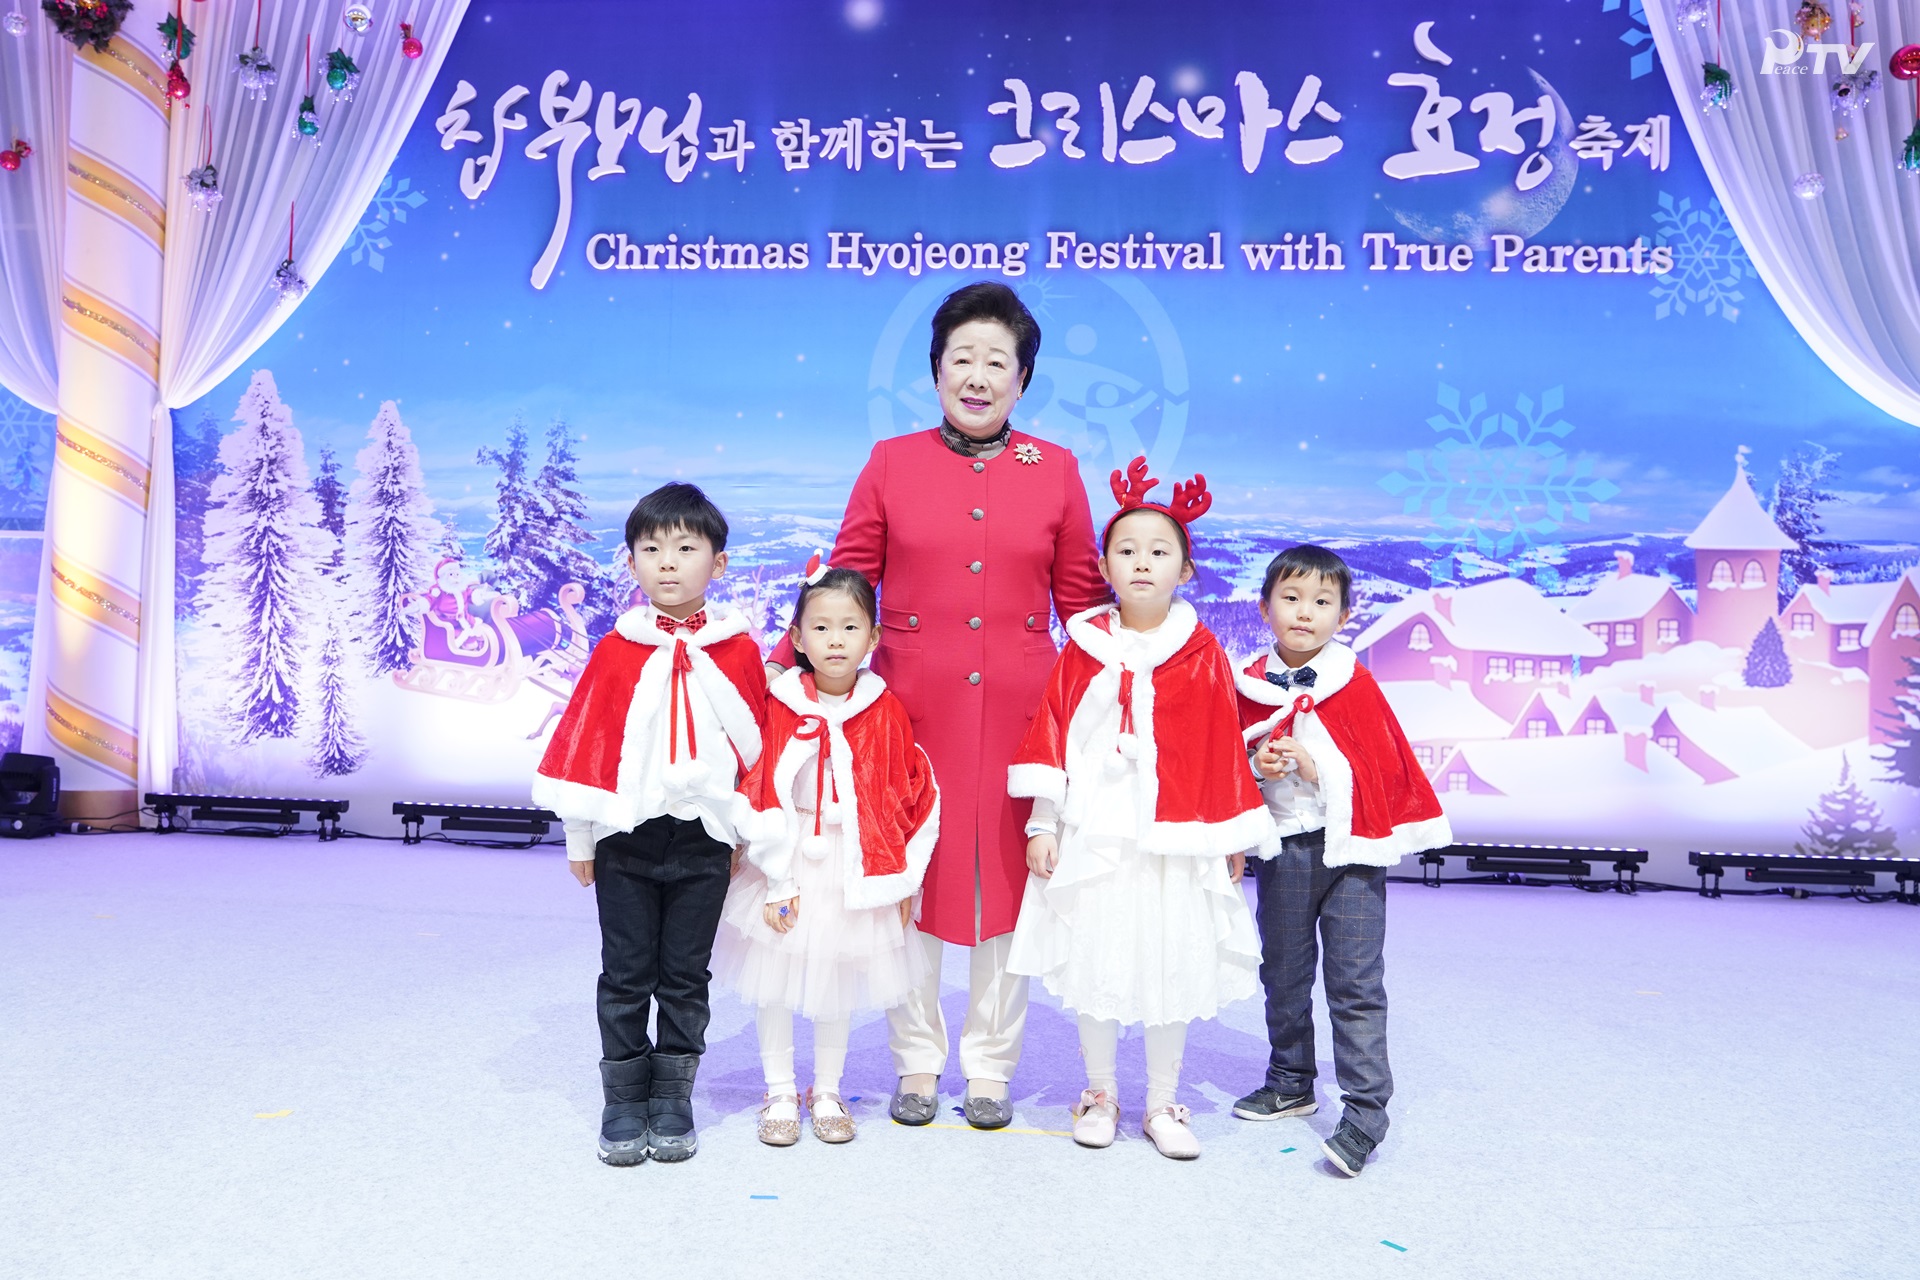 Hyojeong Christmas Festival with True Parents (December 25)